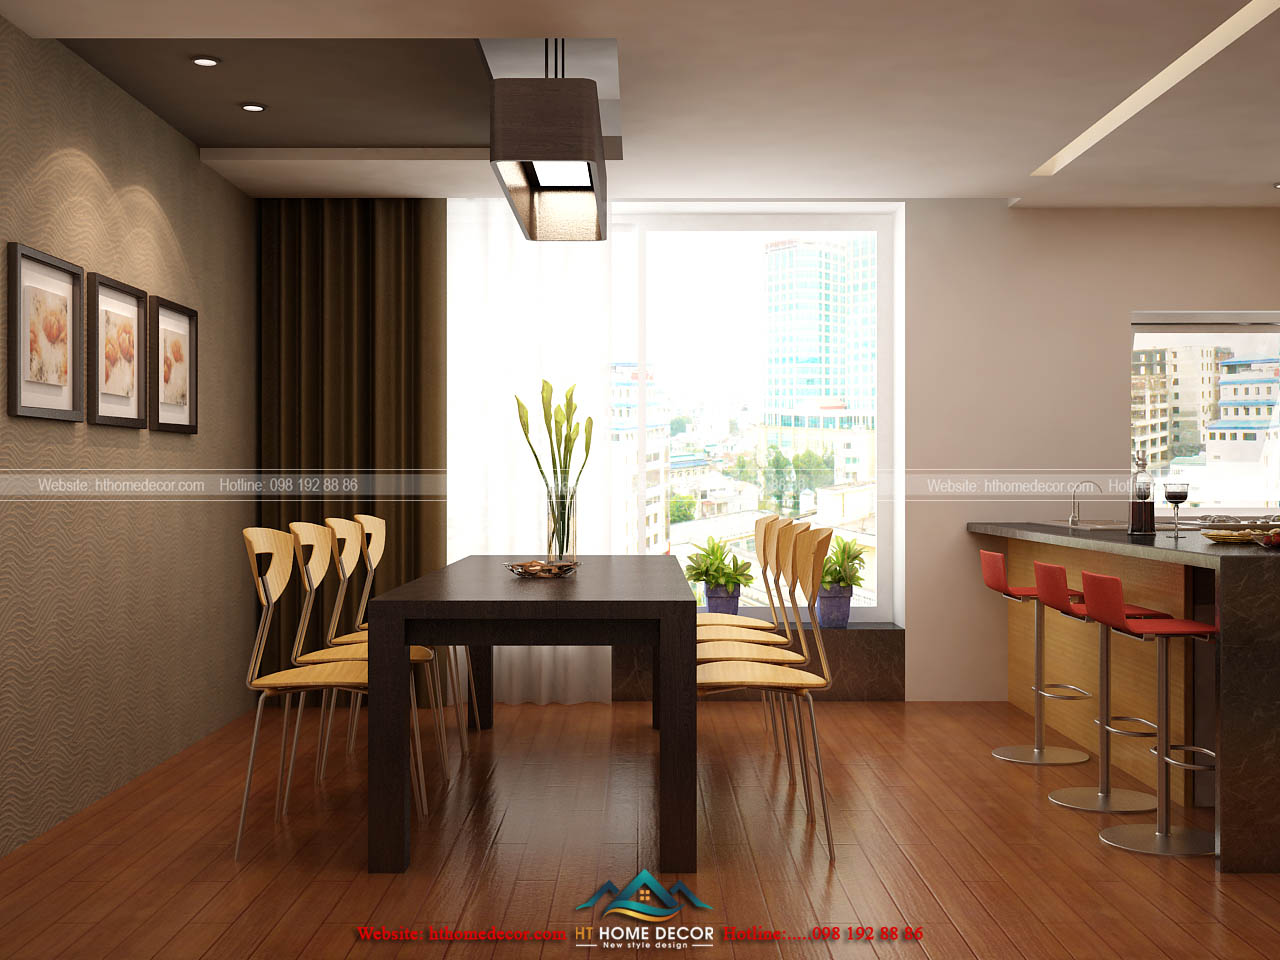 Phòng bếp tinh tế lựa chọn cửa rộng bằng kính trong suốt, mang đến ánh sang tự nhiên vào, tiết kiệm được nguồn điện năng, cho không gian thêm thoáng mát.